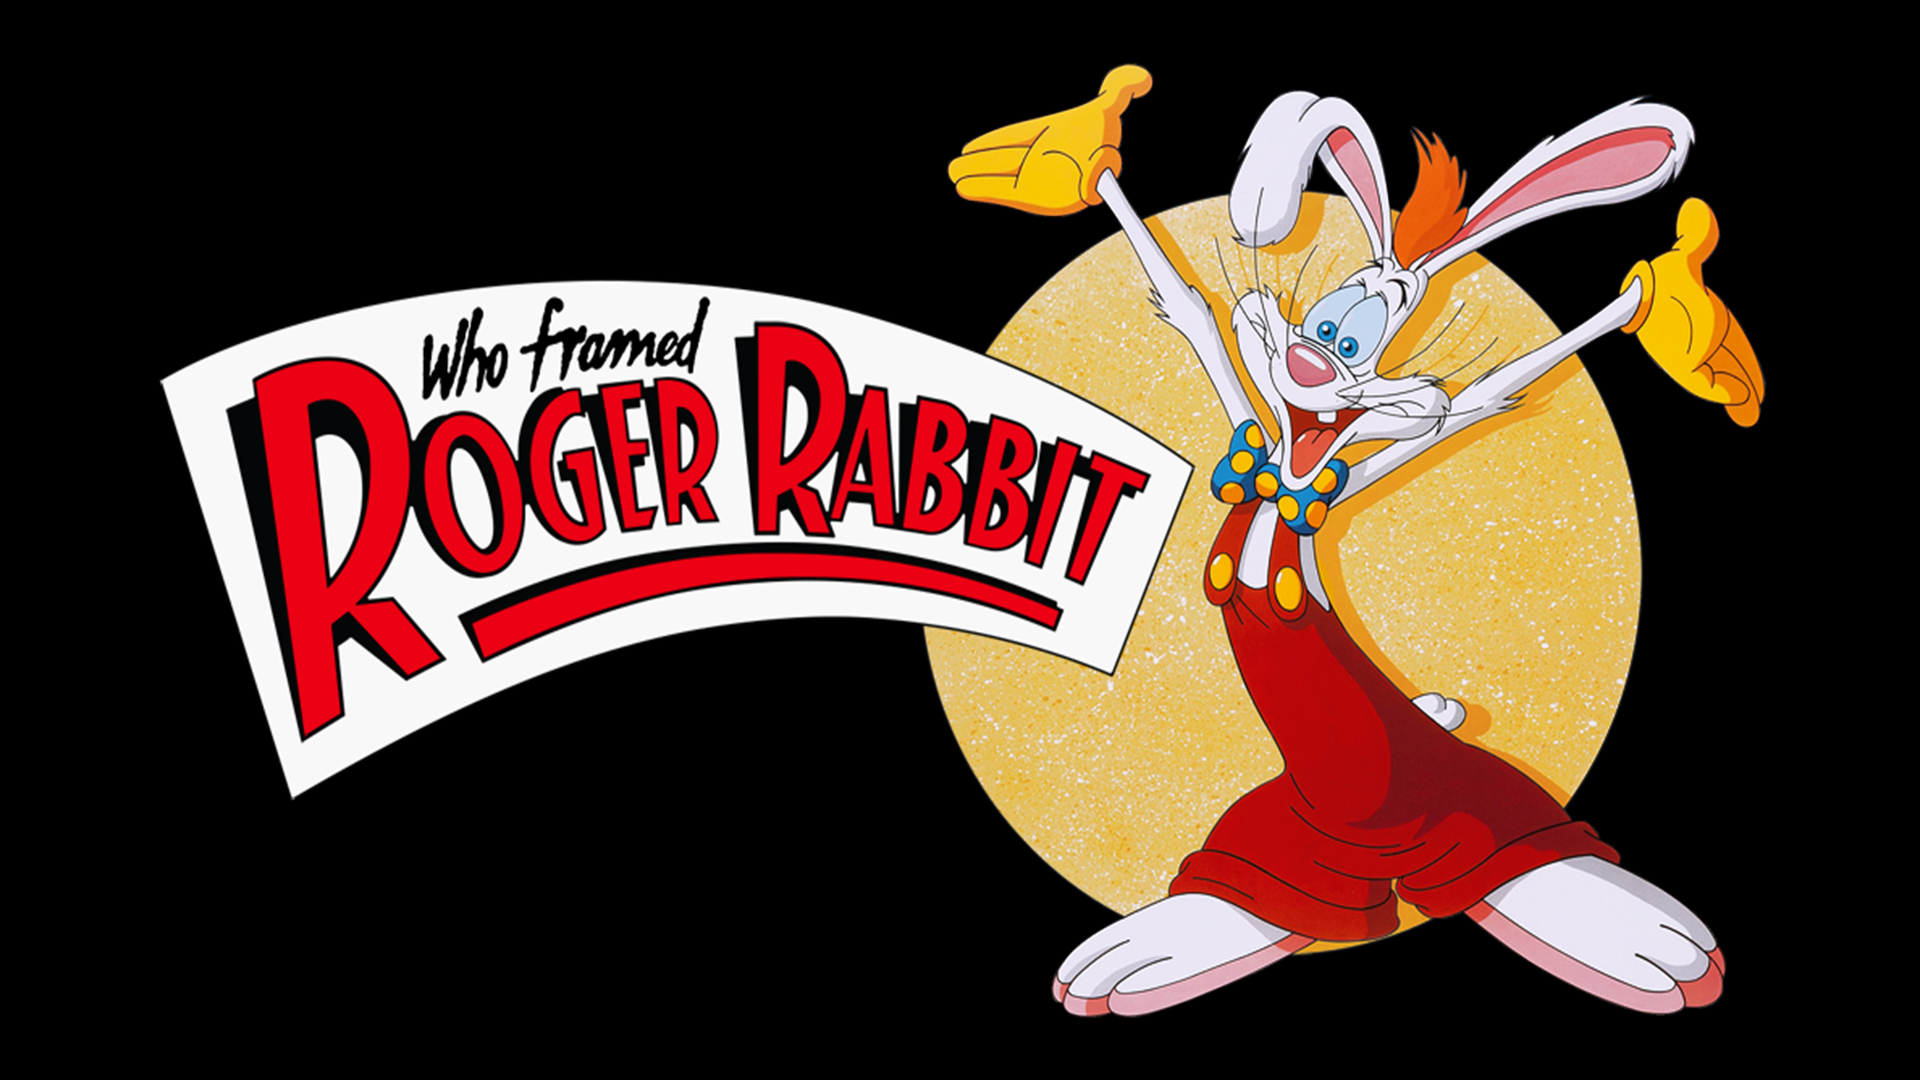 movie, who framed roger rabbit?, roger rabbit, who framed roger rabbit